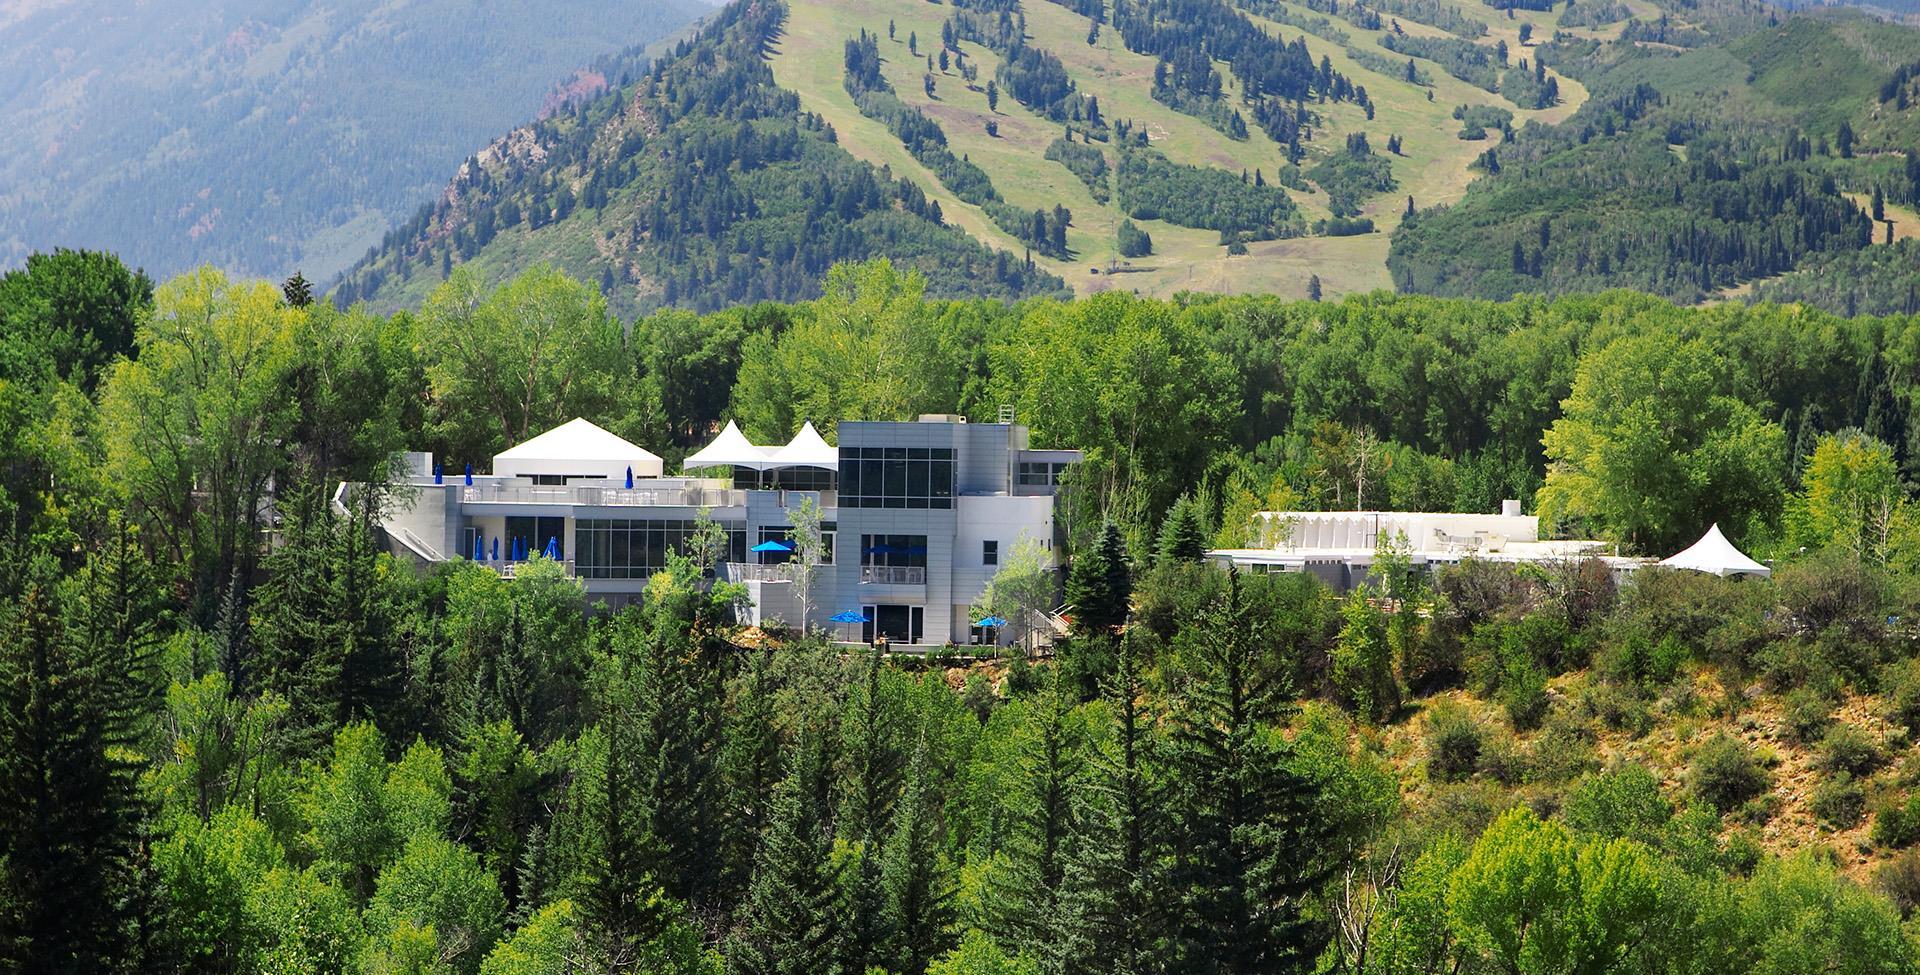 Aspen Hotels and Lodges